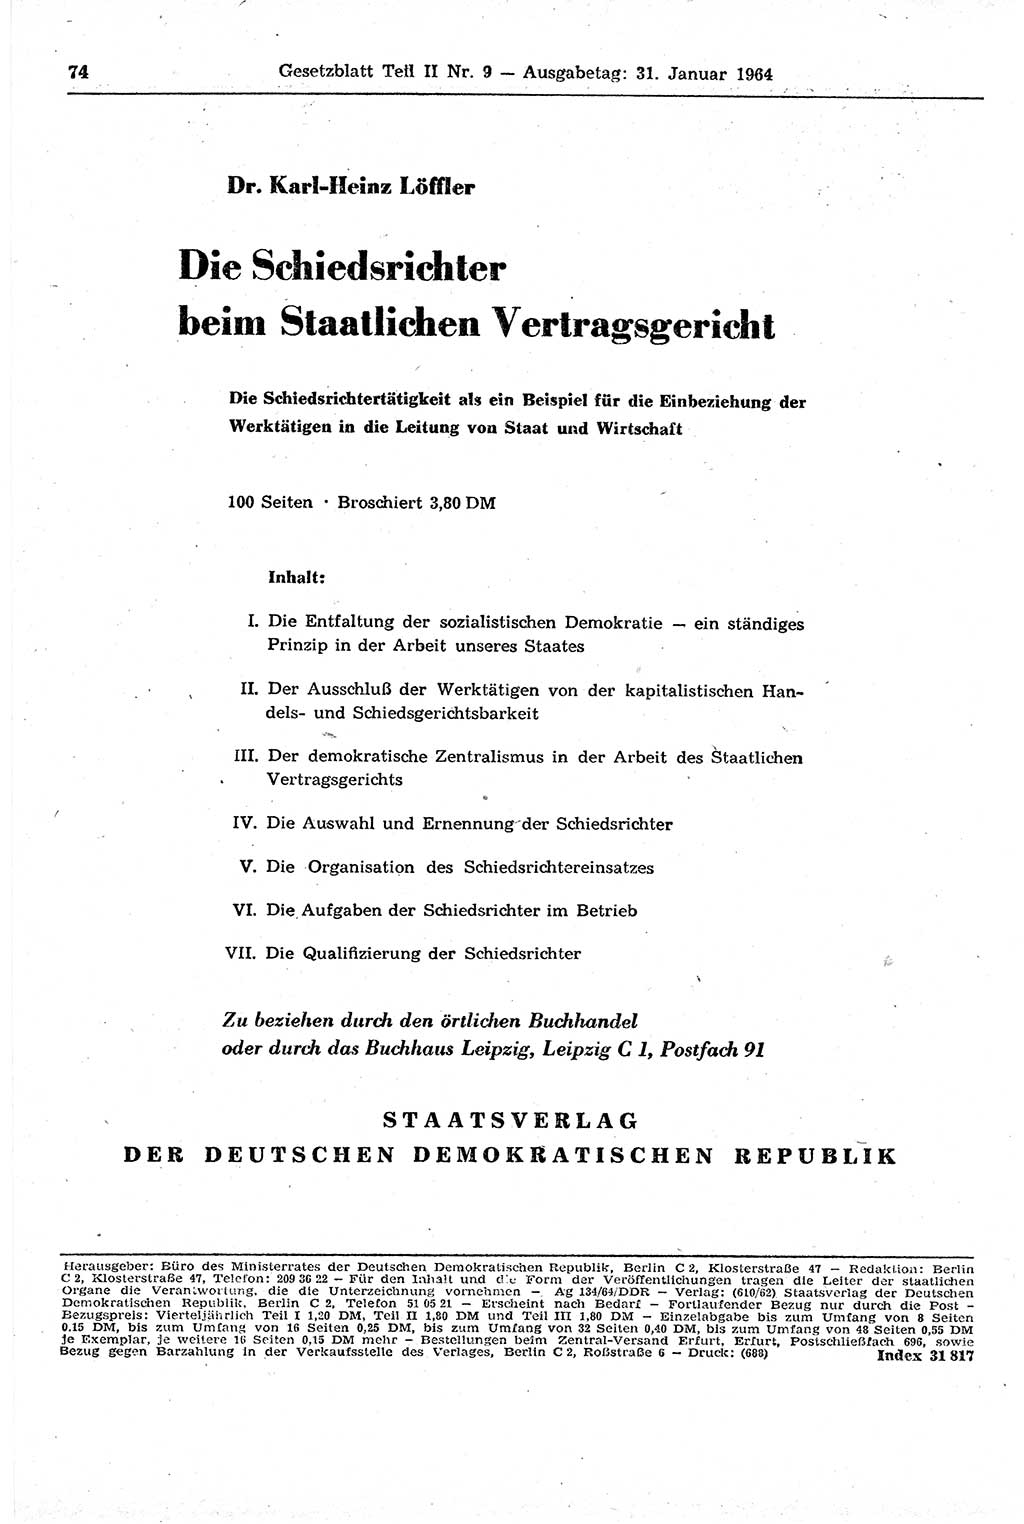 Gesetzblatt (GBl.) der Deutschen Demokratischen Republik (DDR) Teil ⅠⅠ 1964, Seite 74 (GBl. DDR ⅠⅠ 1964, S. 74)